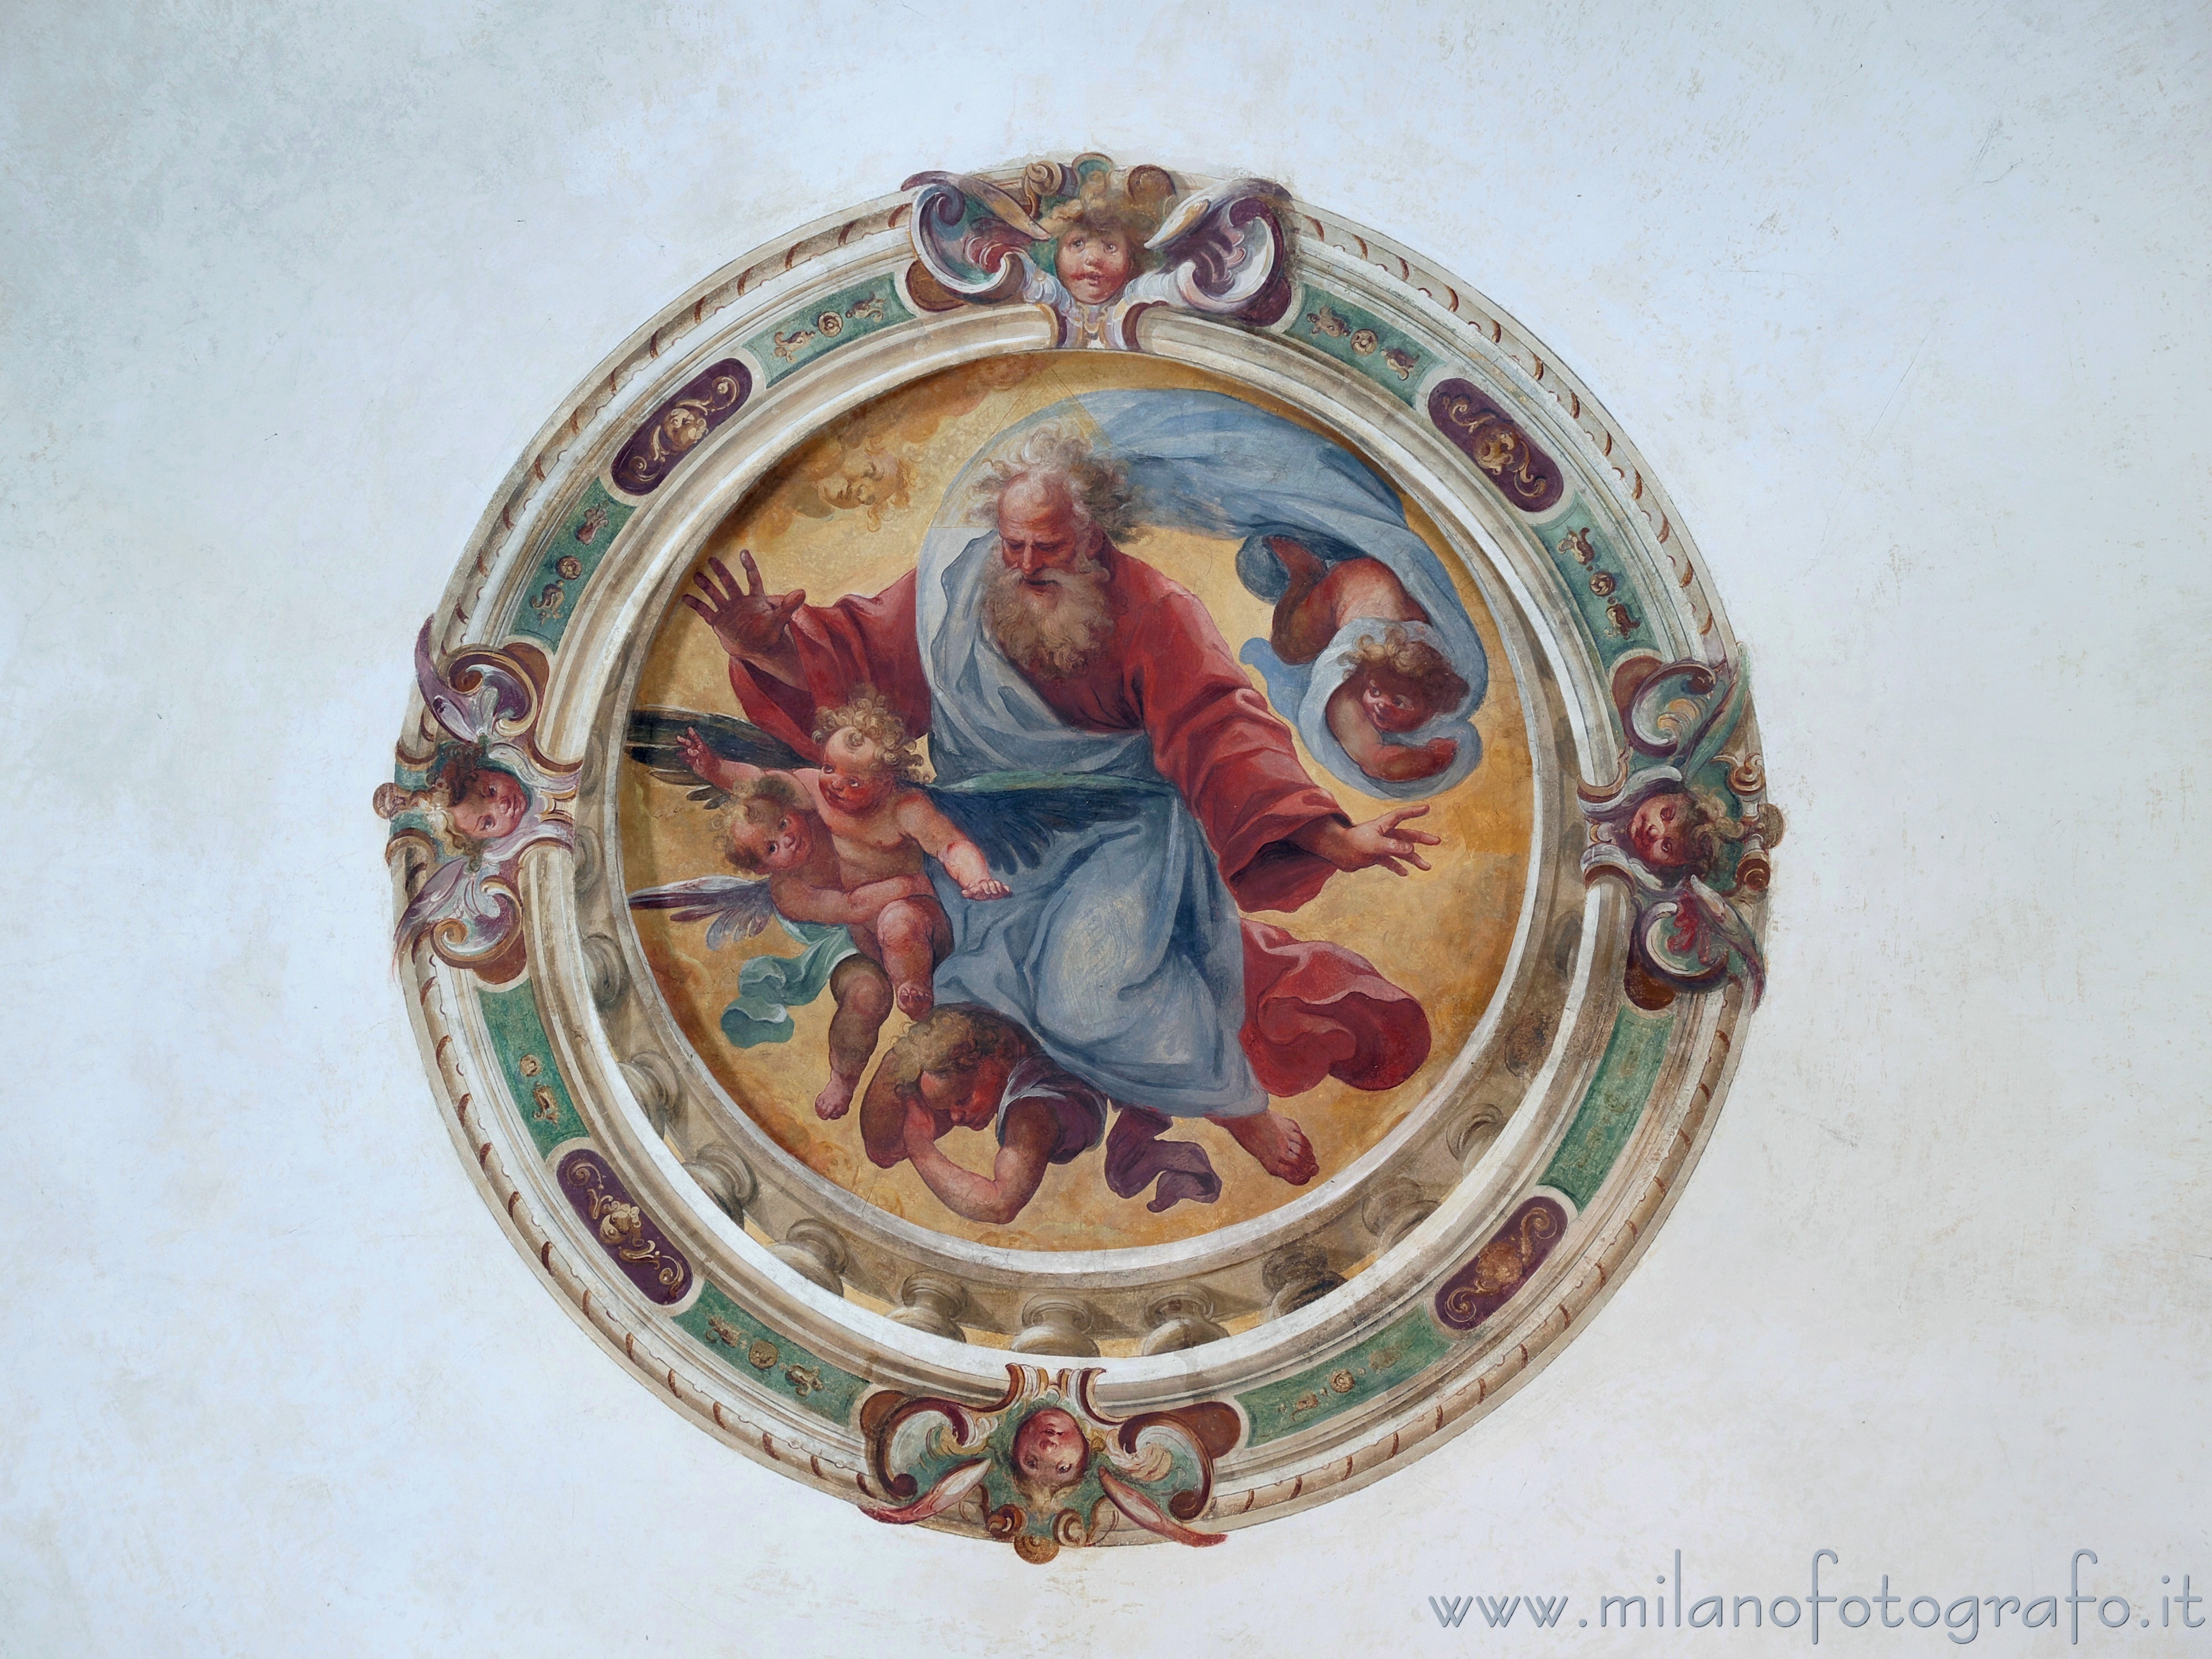 Sesto San Giovanni (Milano): Dio Padre benedicente nell'Oratorio di Santa Margherita in Villa Torretta - Sesto San Giovanni (Milano)